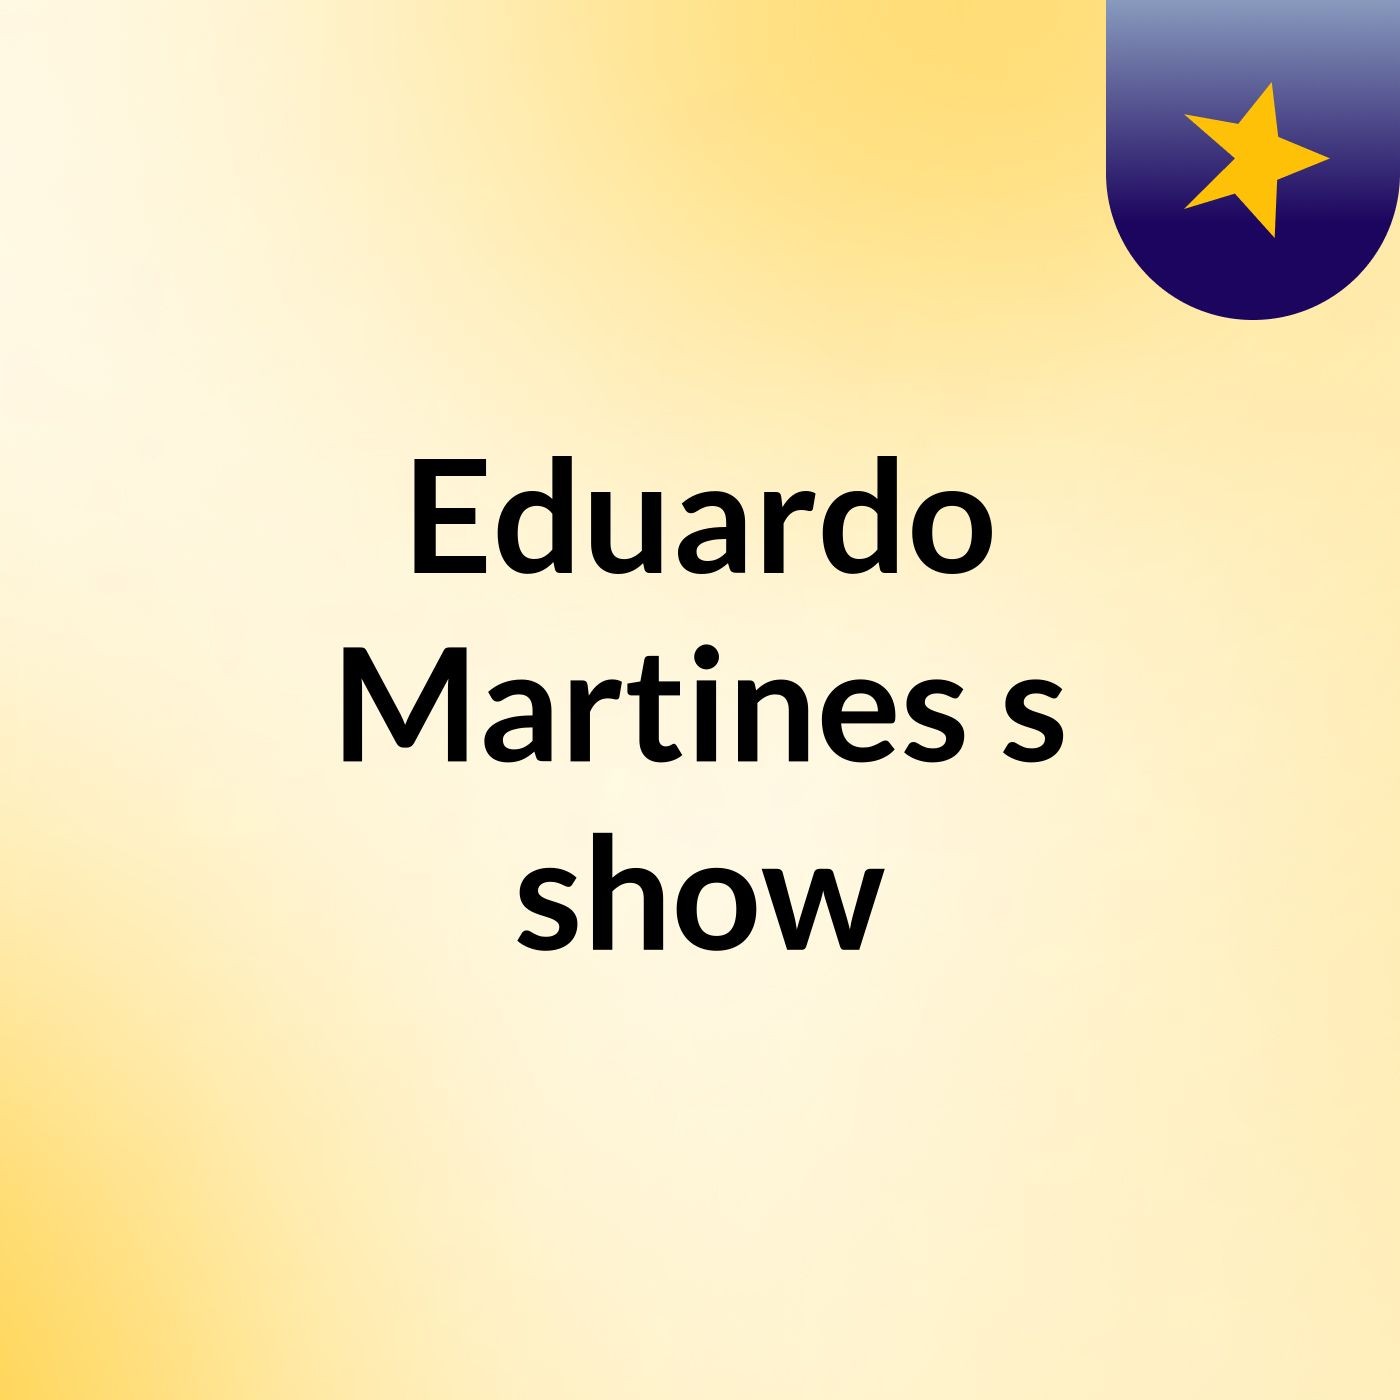 Eduardo Martines's show